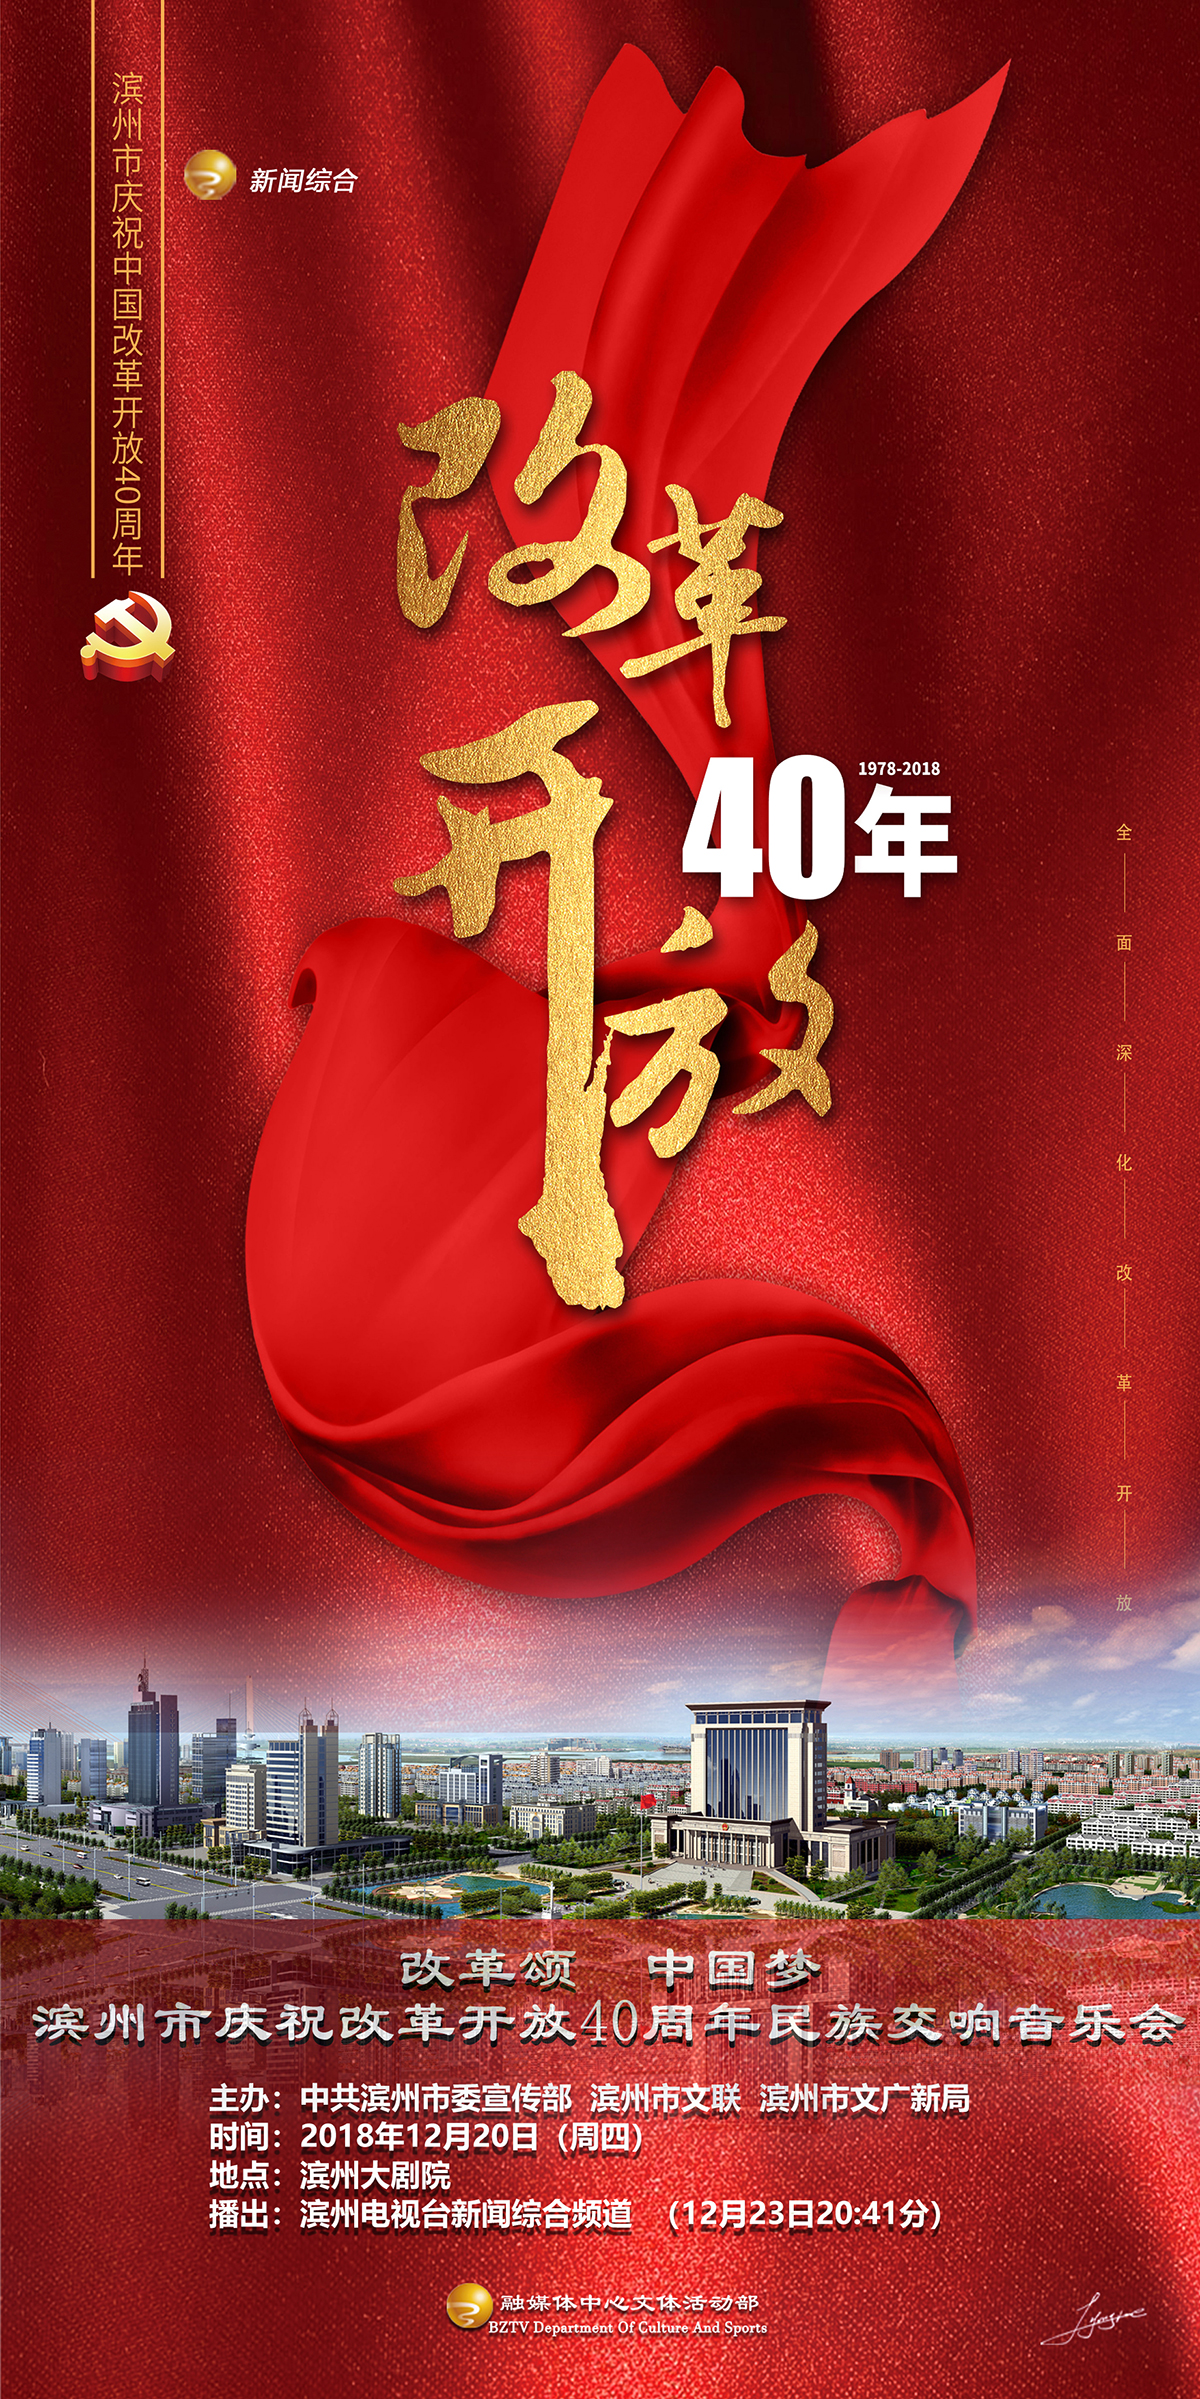 滨州市庆祝改革开放40周年民族交响音乐会20日将在滨州保利大剧院奏响